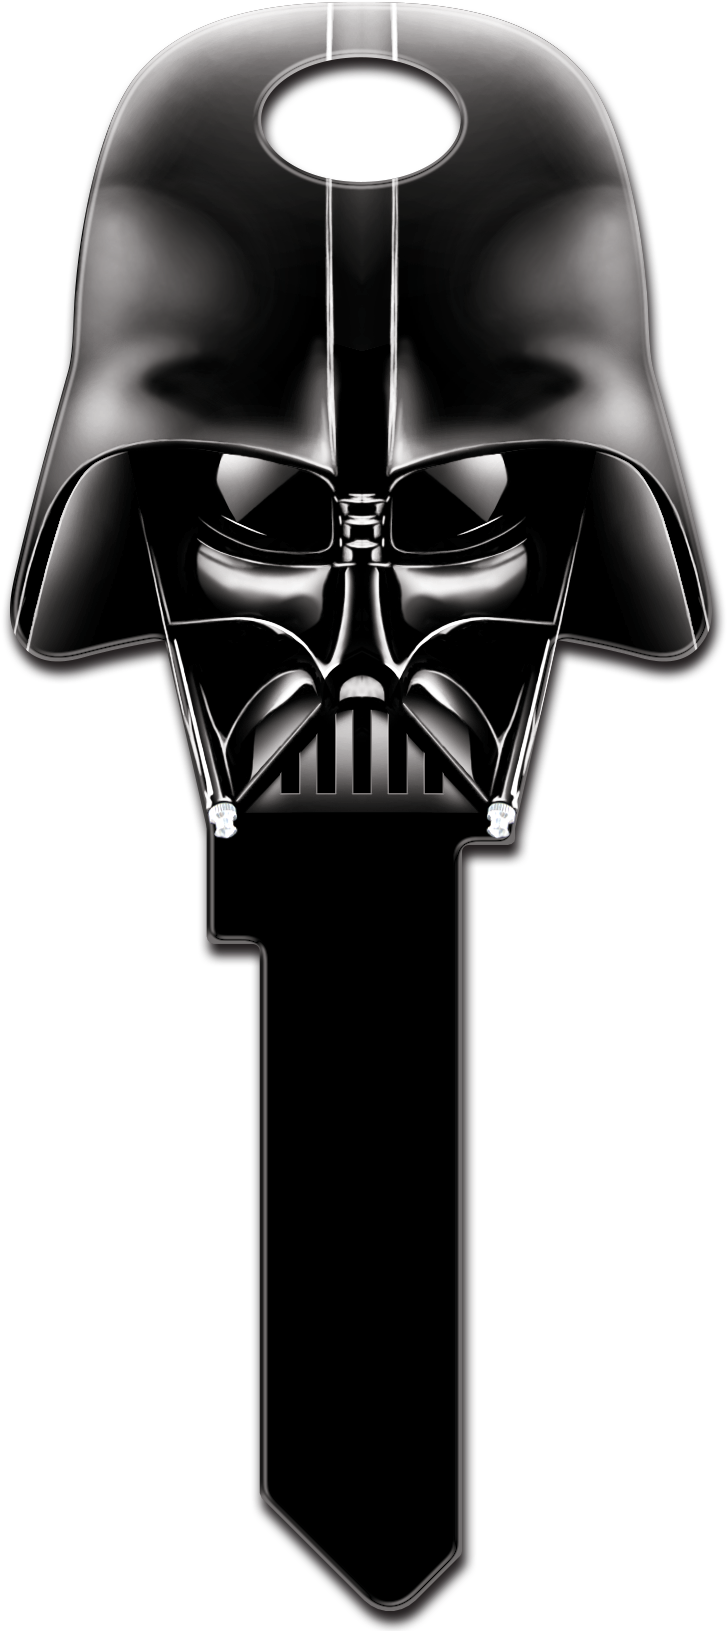 Darth Vader Helmet PNG Image Background